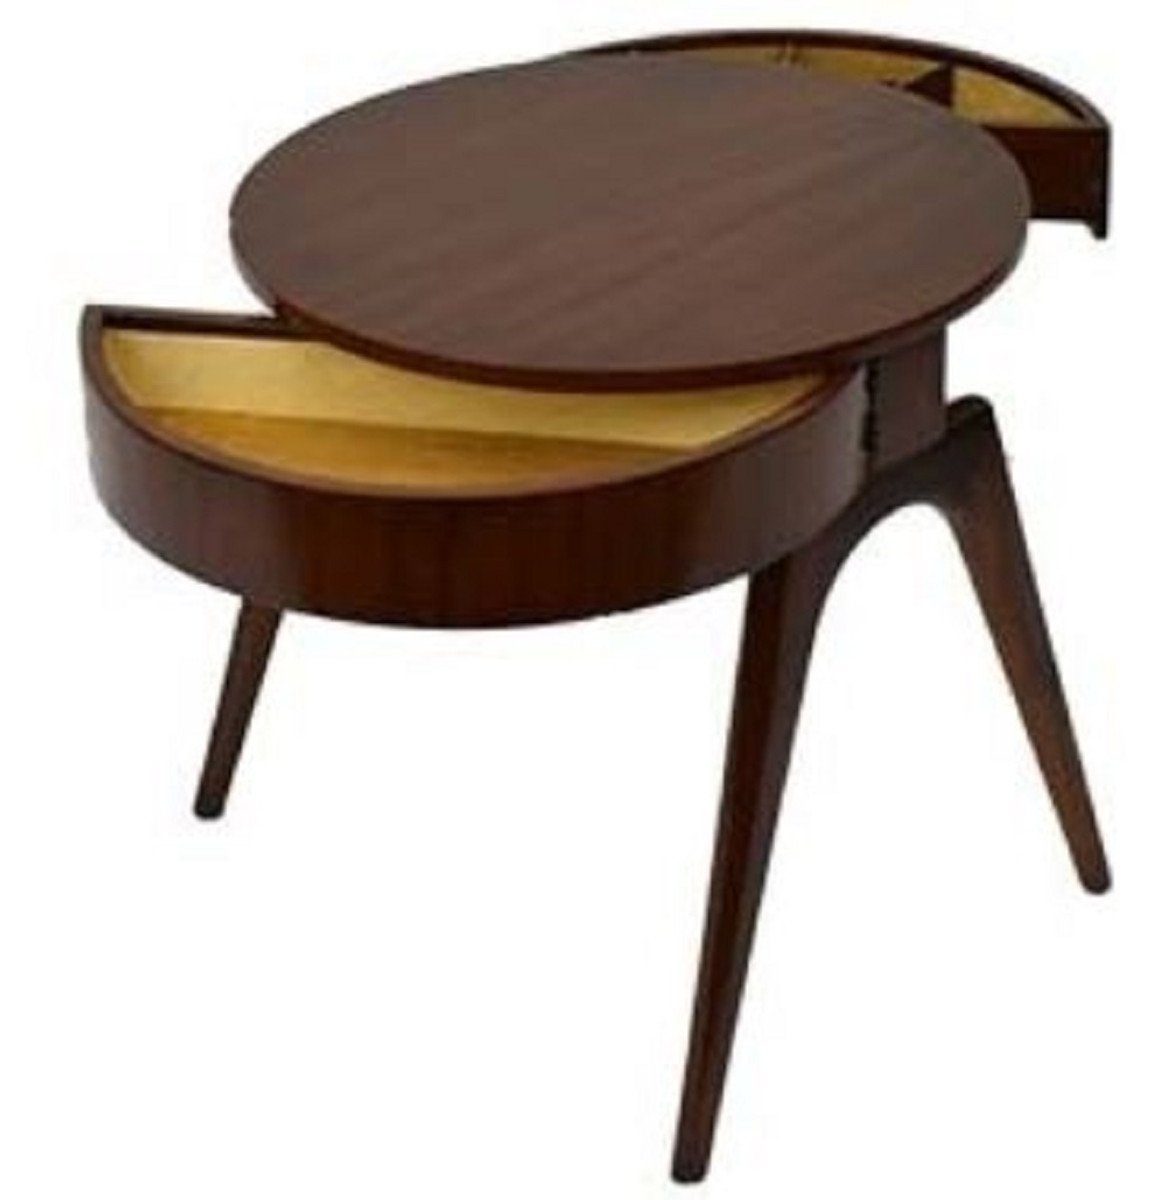 Luxus mit Beistelltisch Tisch x 2 - cm Ø Mahagoni 54 Schubladen Casa Padrino - Dunkelbraun Runder H. Beistelltisch 54 Qualität Luxus